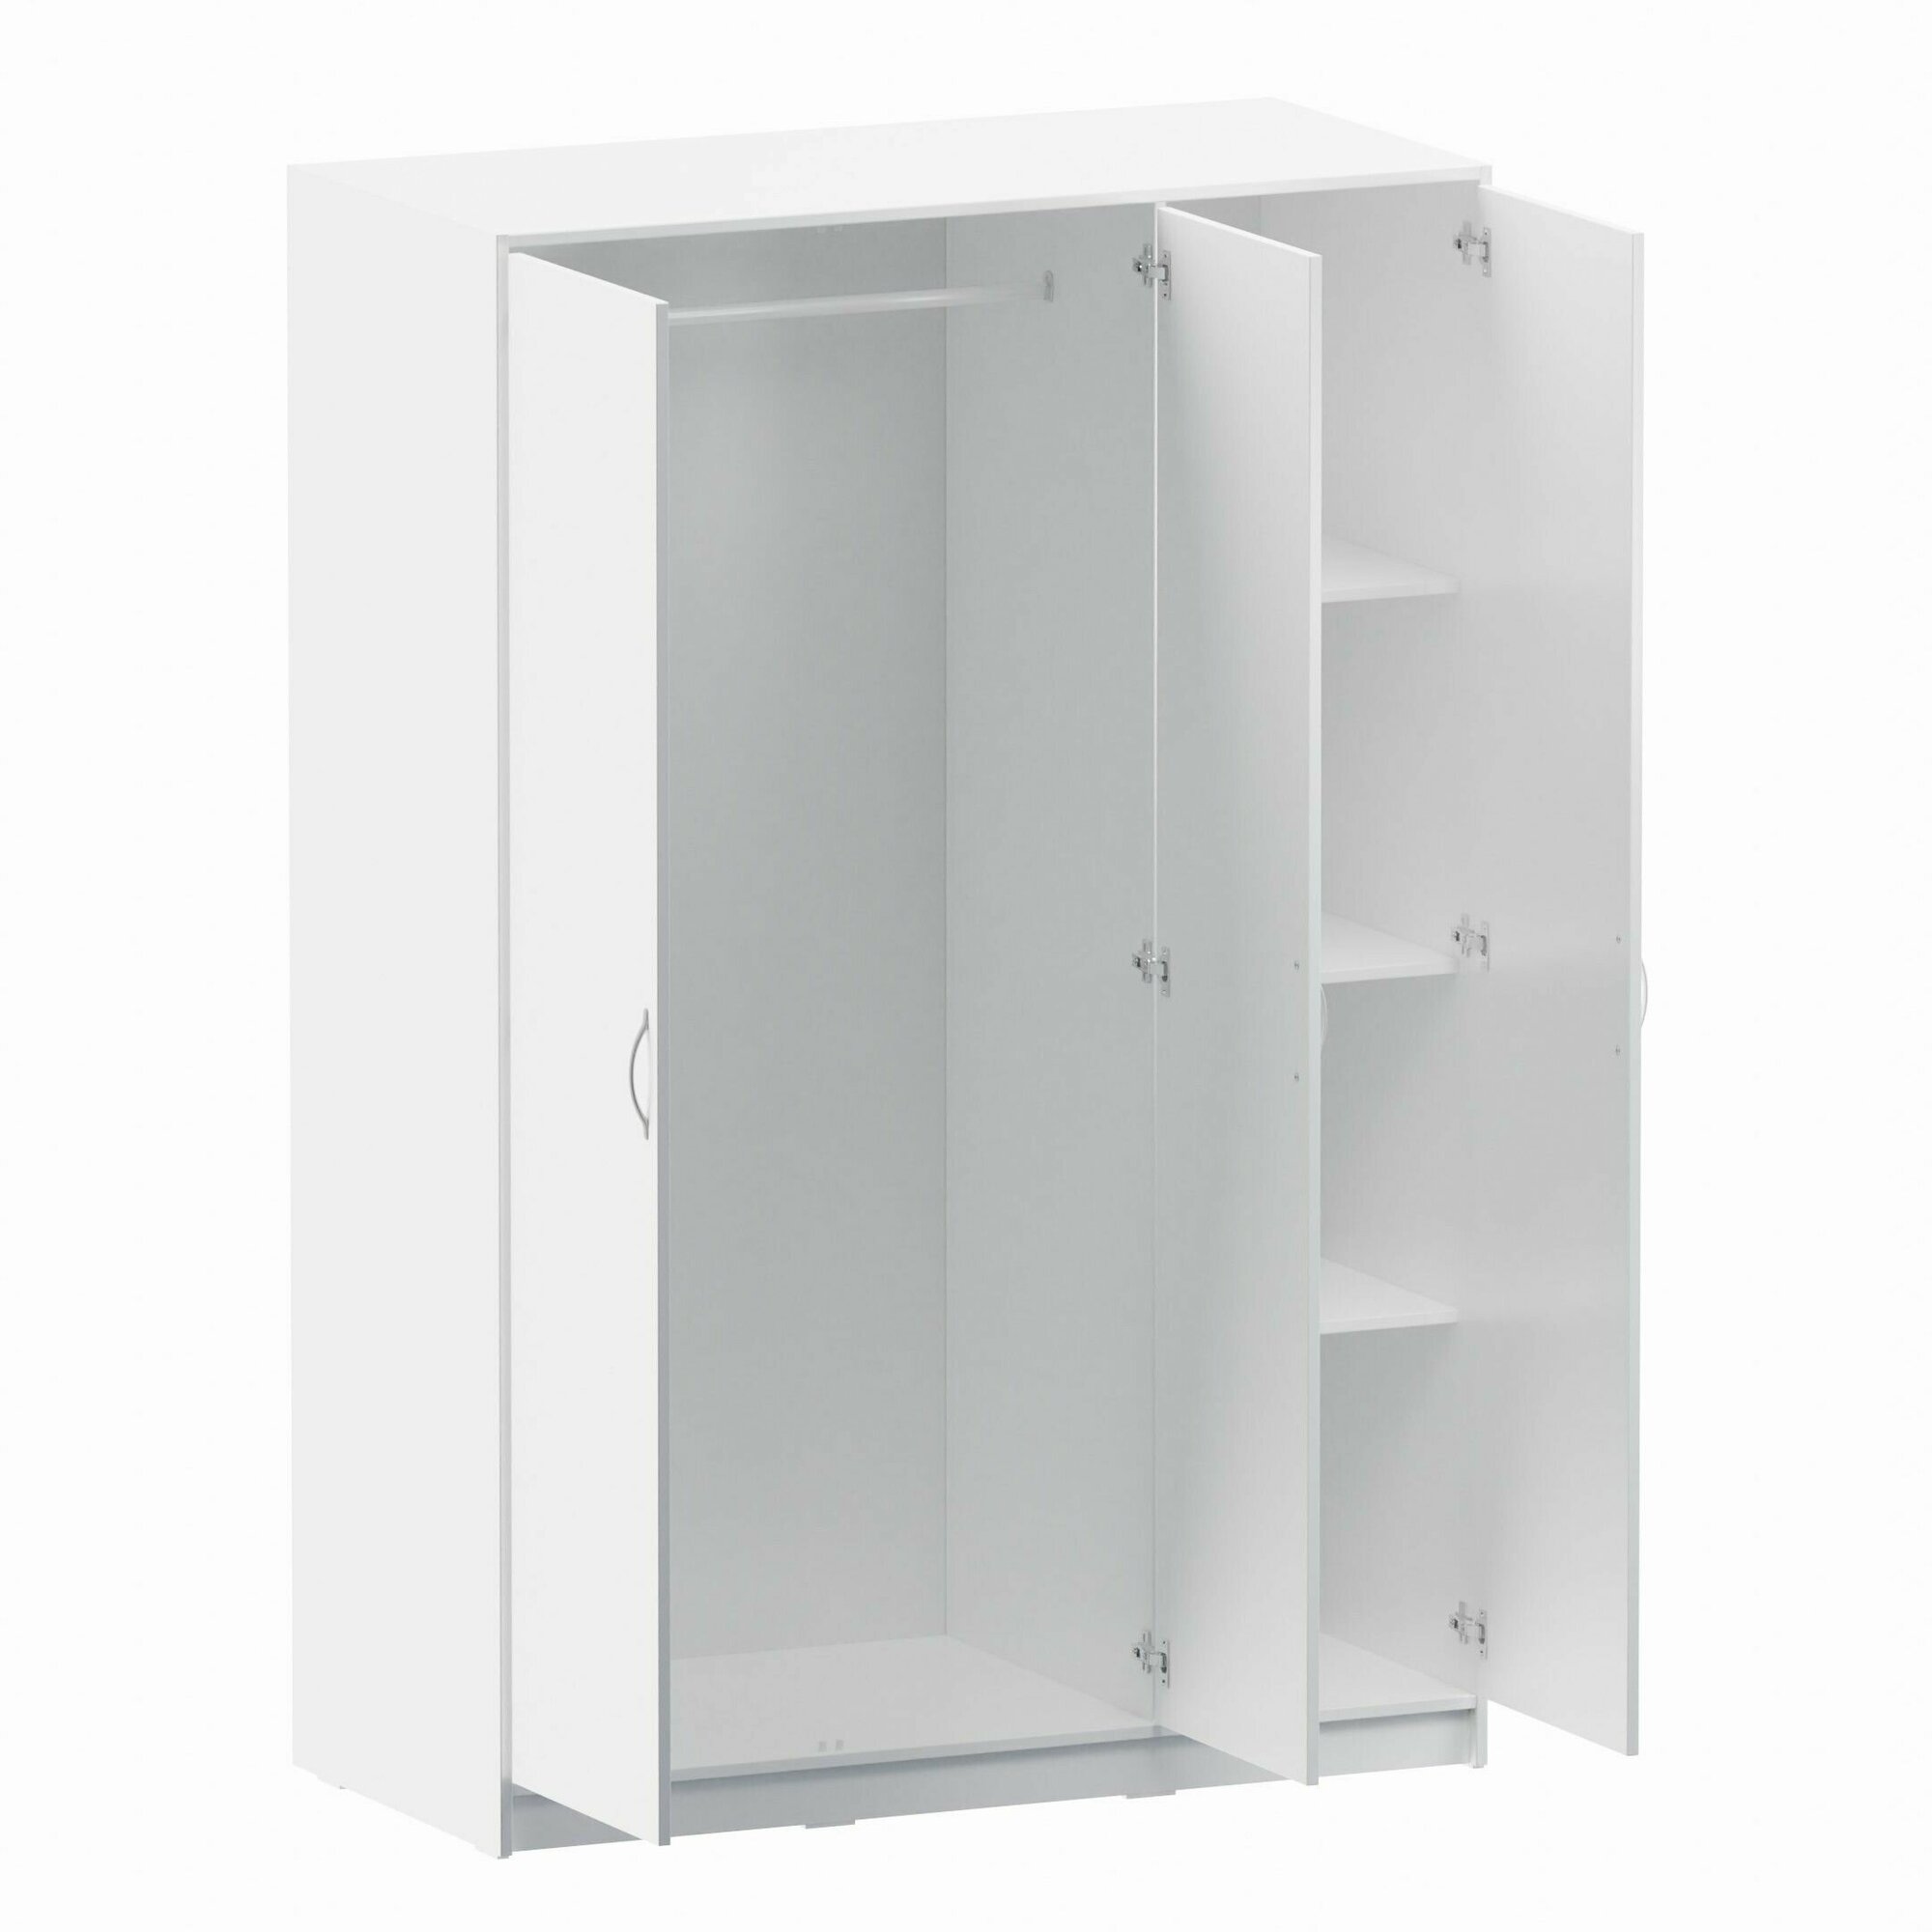 Шкаф для одежды для детской ГУД ЛАКК Орион 3 двери, (ШхГхВ): 117.3х55х175.2 см, белый